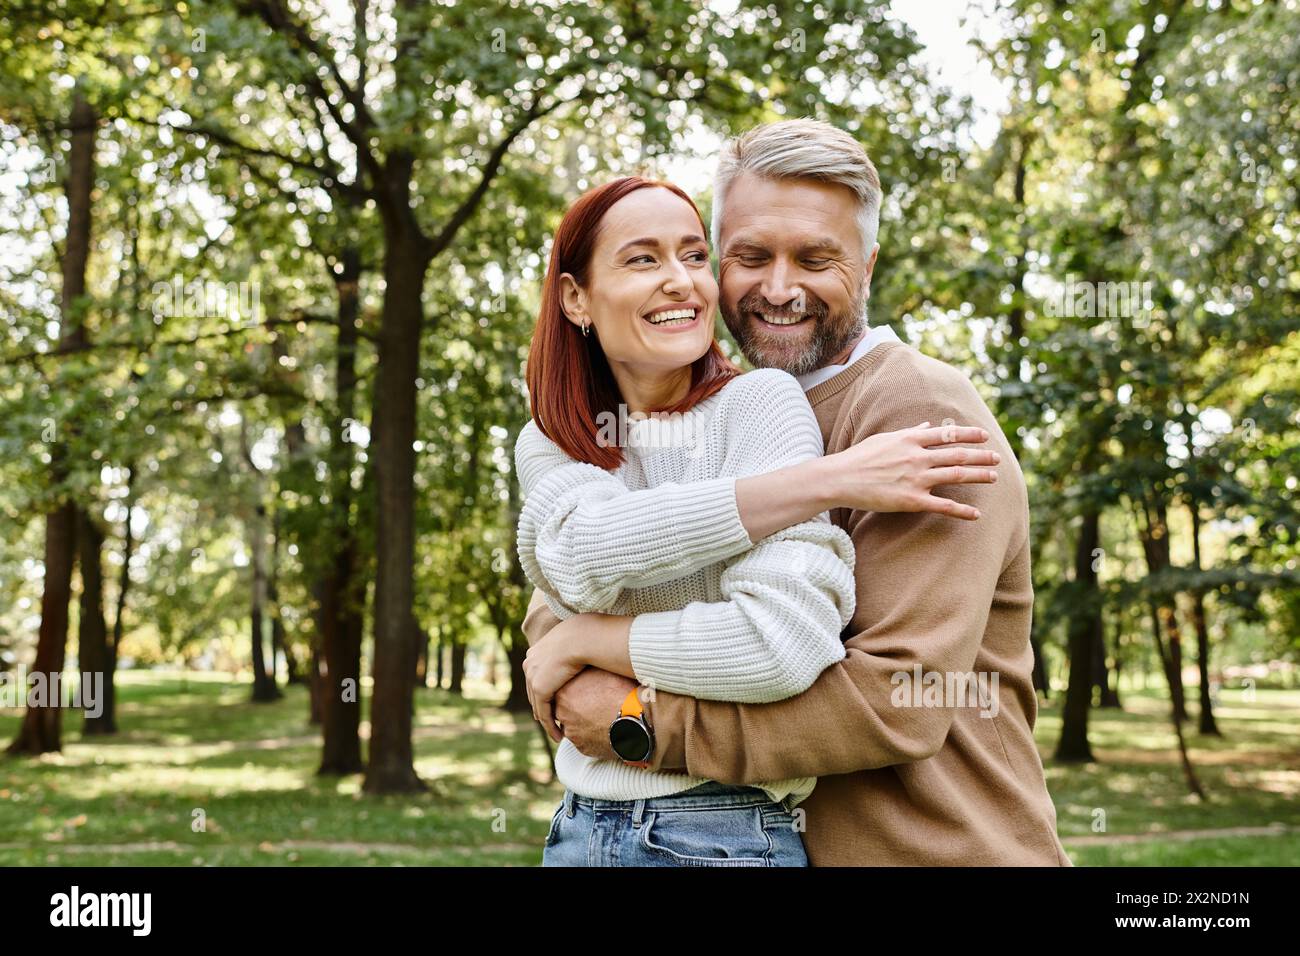 Ein erwachsener Mann und eine Frau in lässiger Kleidung umarmen sich liebevoll in einem Park. Stockfoto